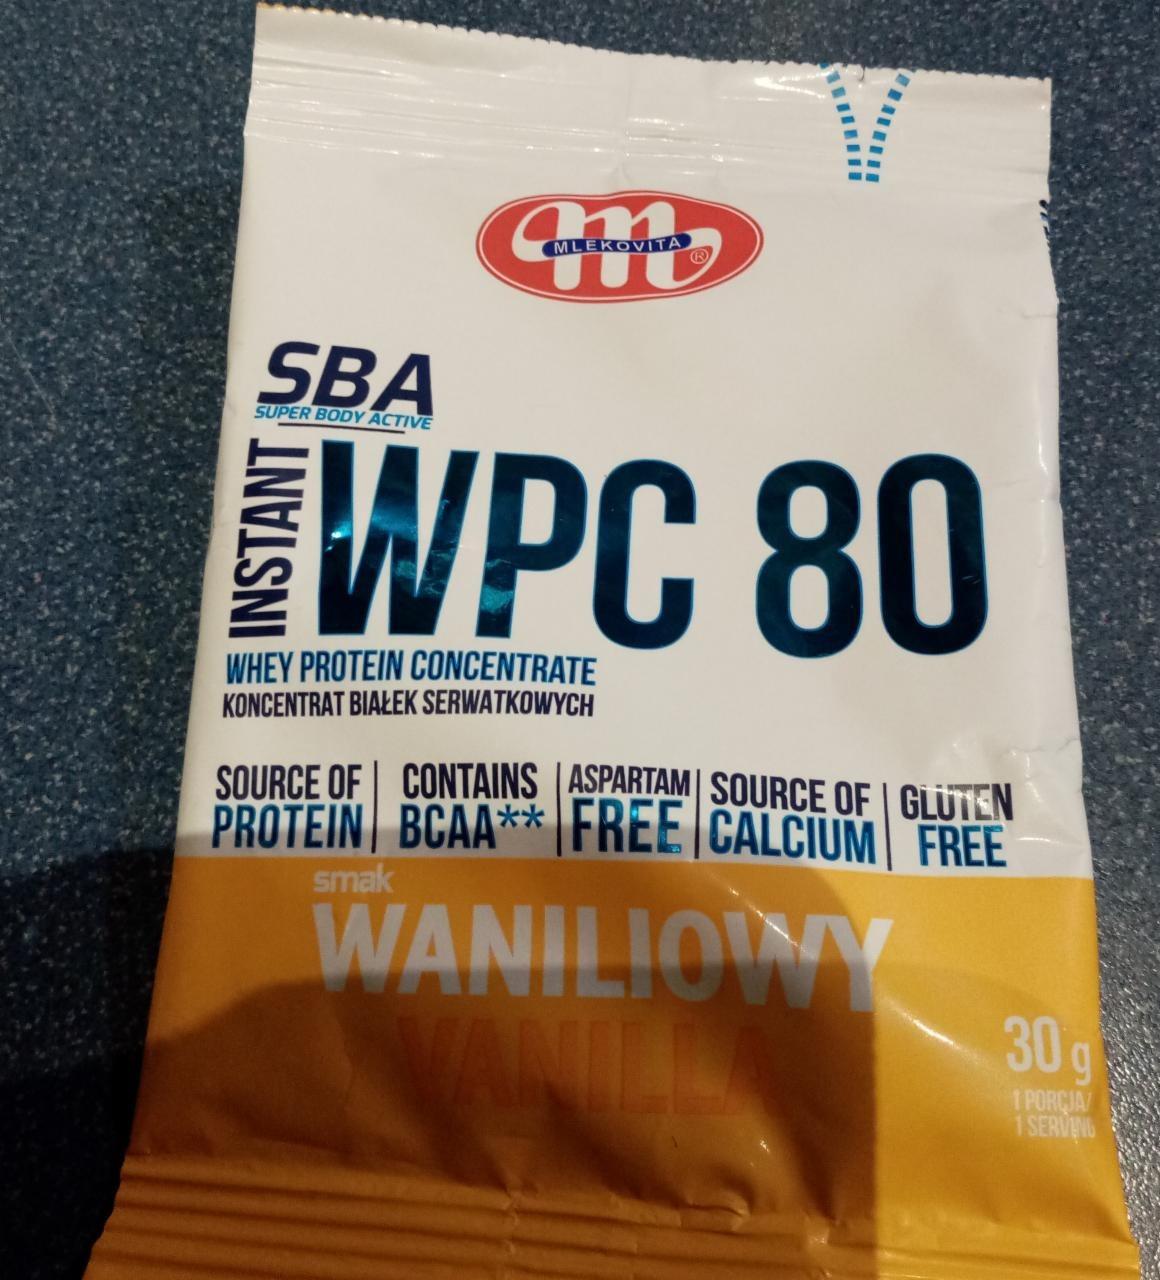 Fotografie - SBA Instant WPC 80 whey protein concentrate smak waniliowy Mlekovita